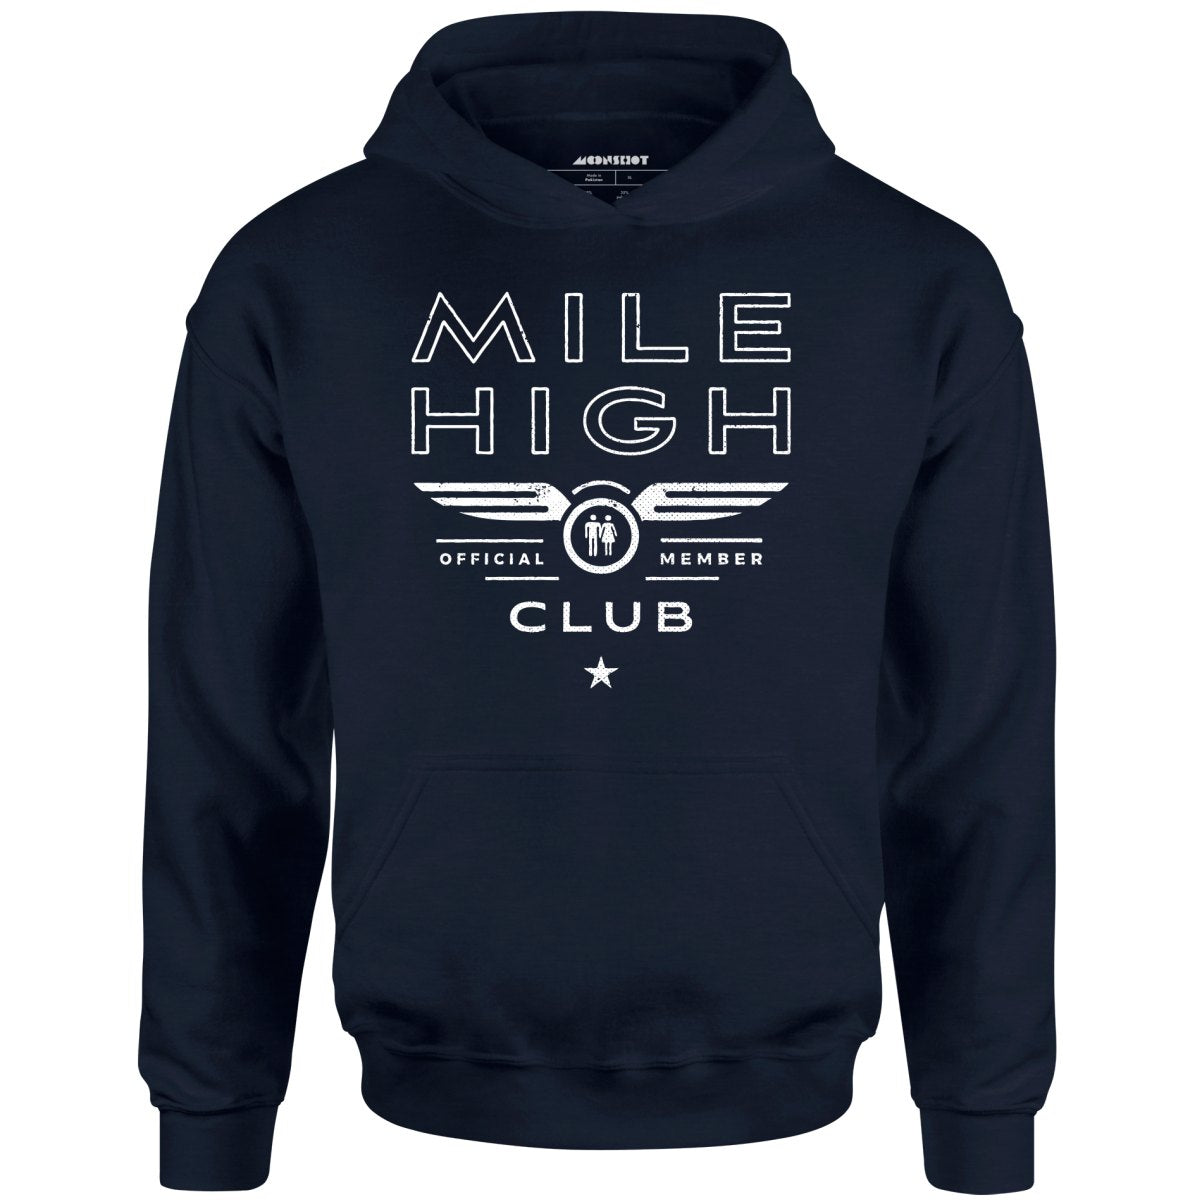 Mile High Club Official Member - Unisex Hoodie